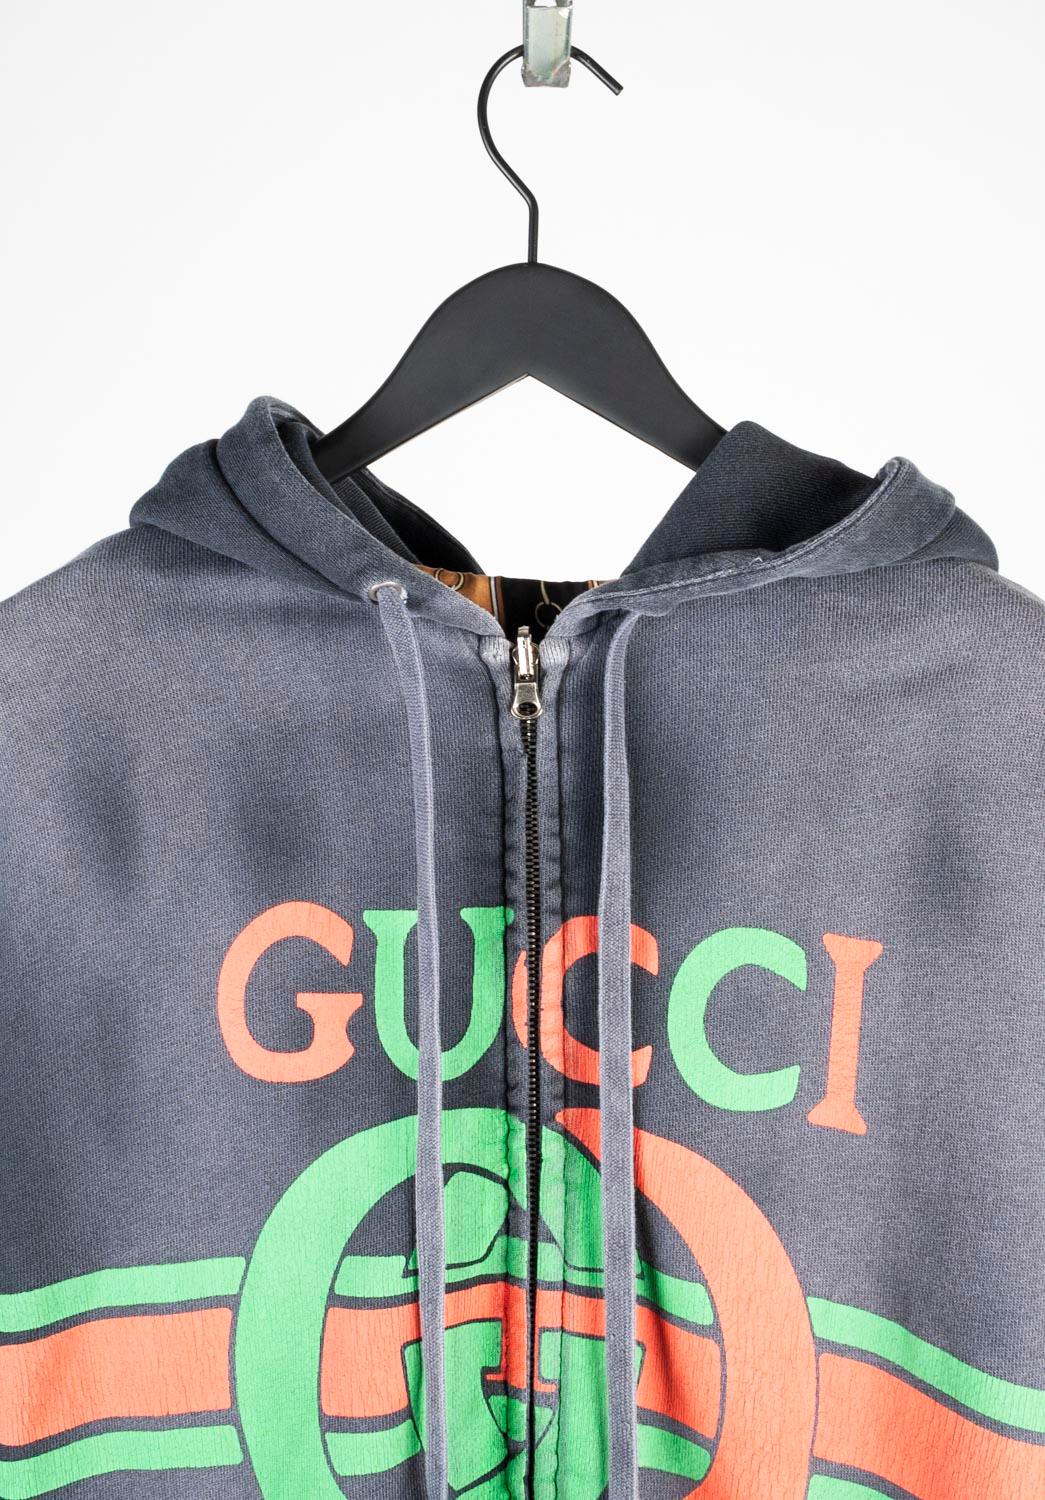 100% authentique Gucci Reversible Jacket Jumper, S669 
Couleur : gris
(La couleur réelle peut varier légèrement en raison de l'interprétation individuelle de l'écran de l'ordinateur).
MATERIAL : 100% coton, l'autre partie est 100% soie.
Taille de